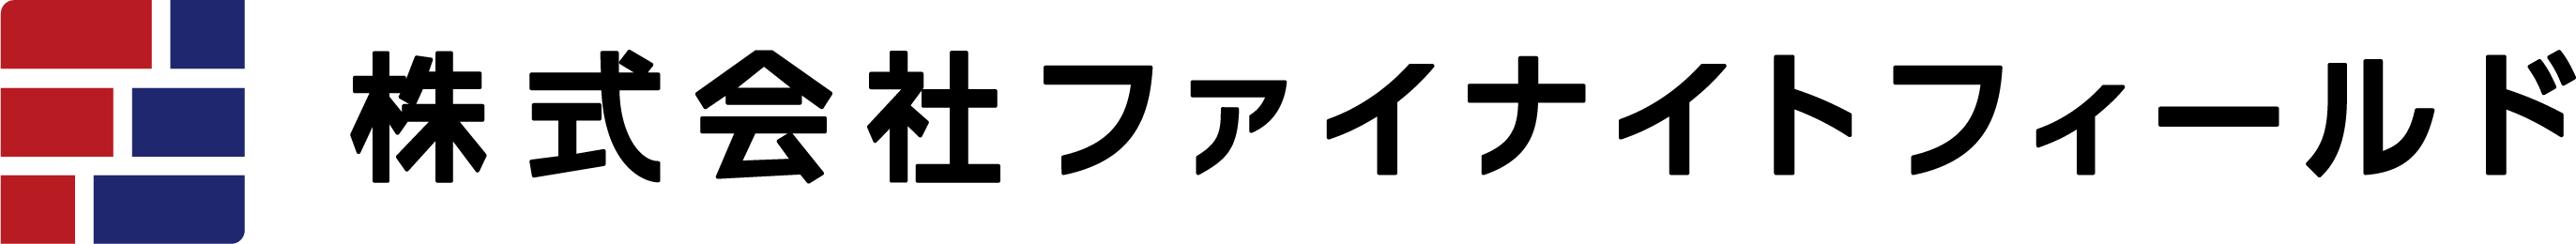 株式会社ファイナイトフィールド ロゴ